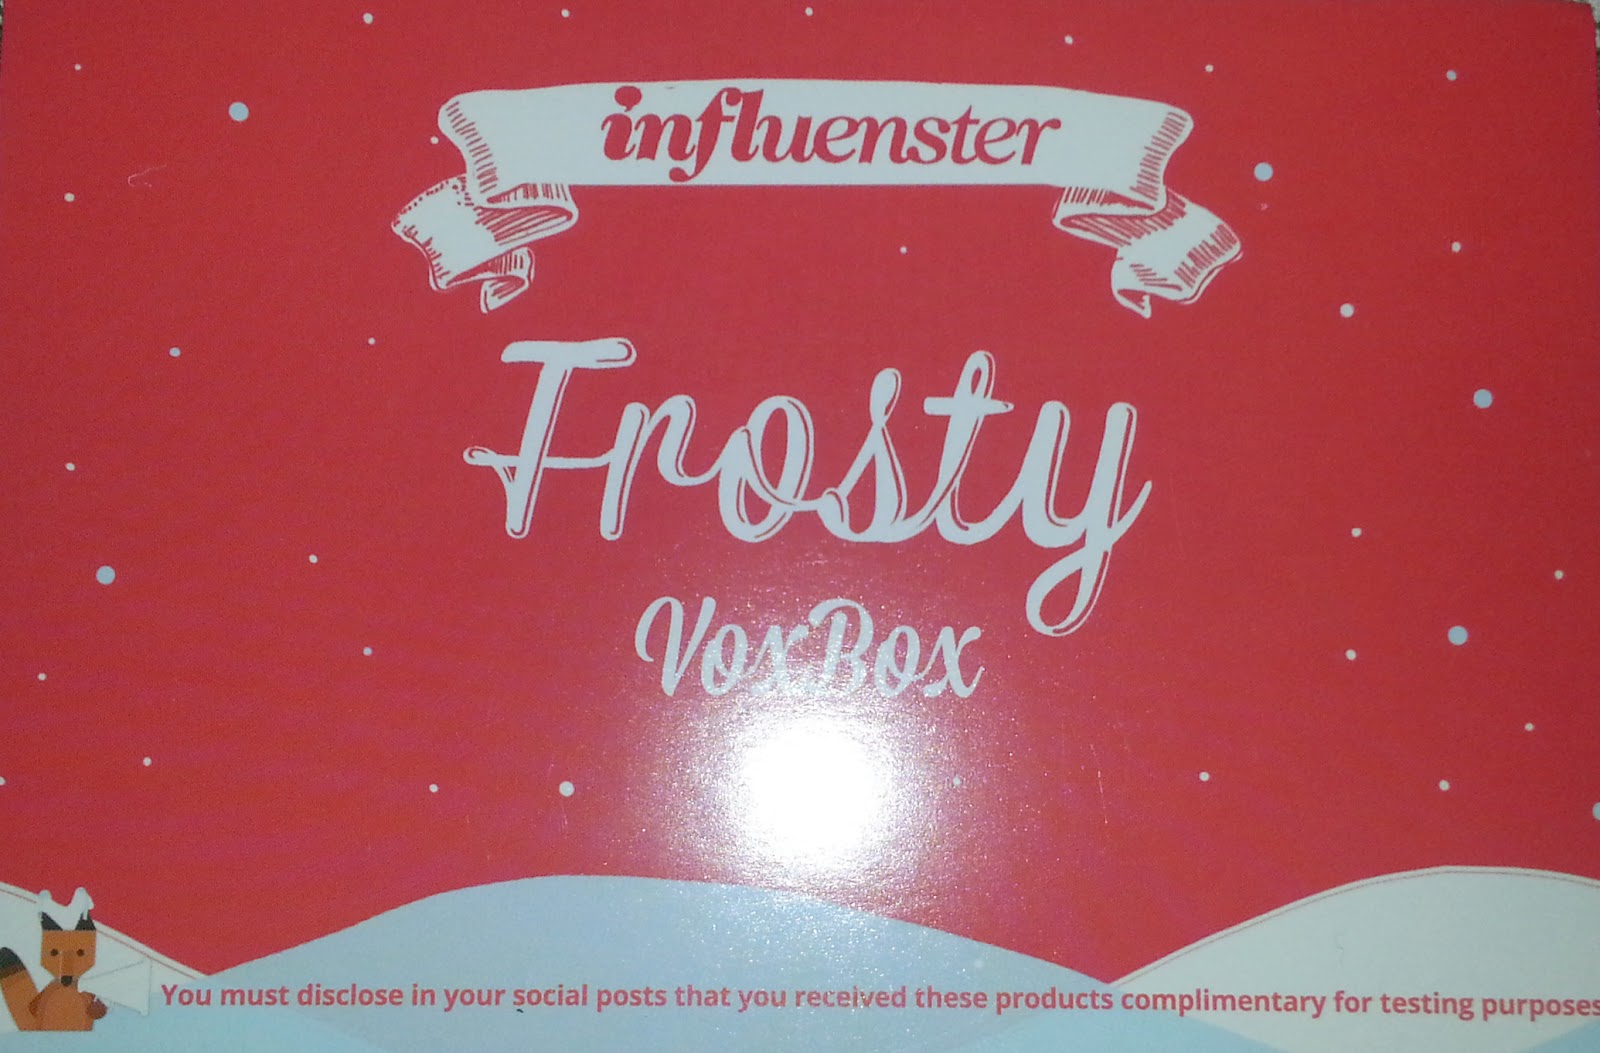 Influenster Frosty VoxBox